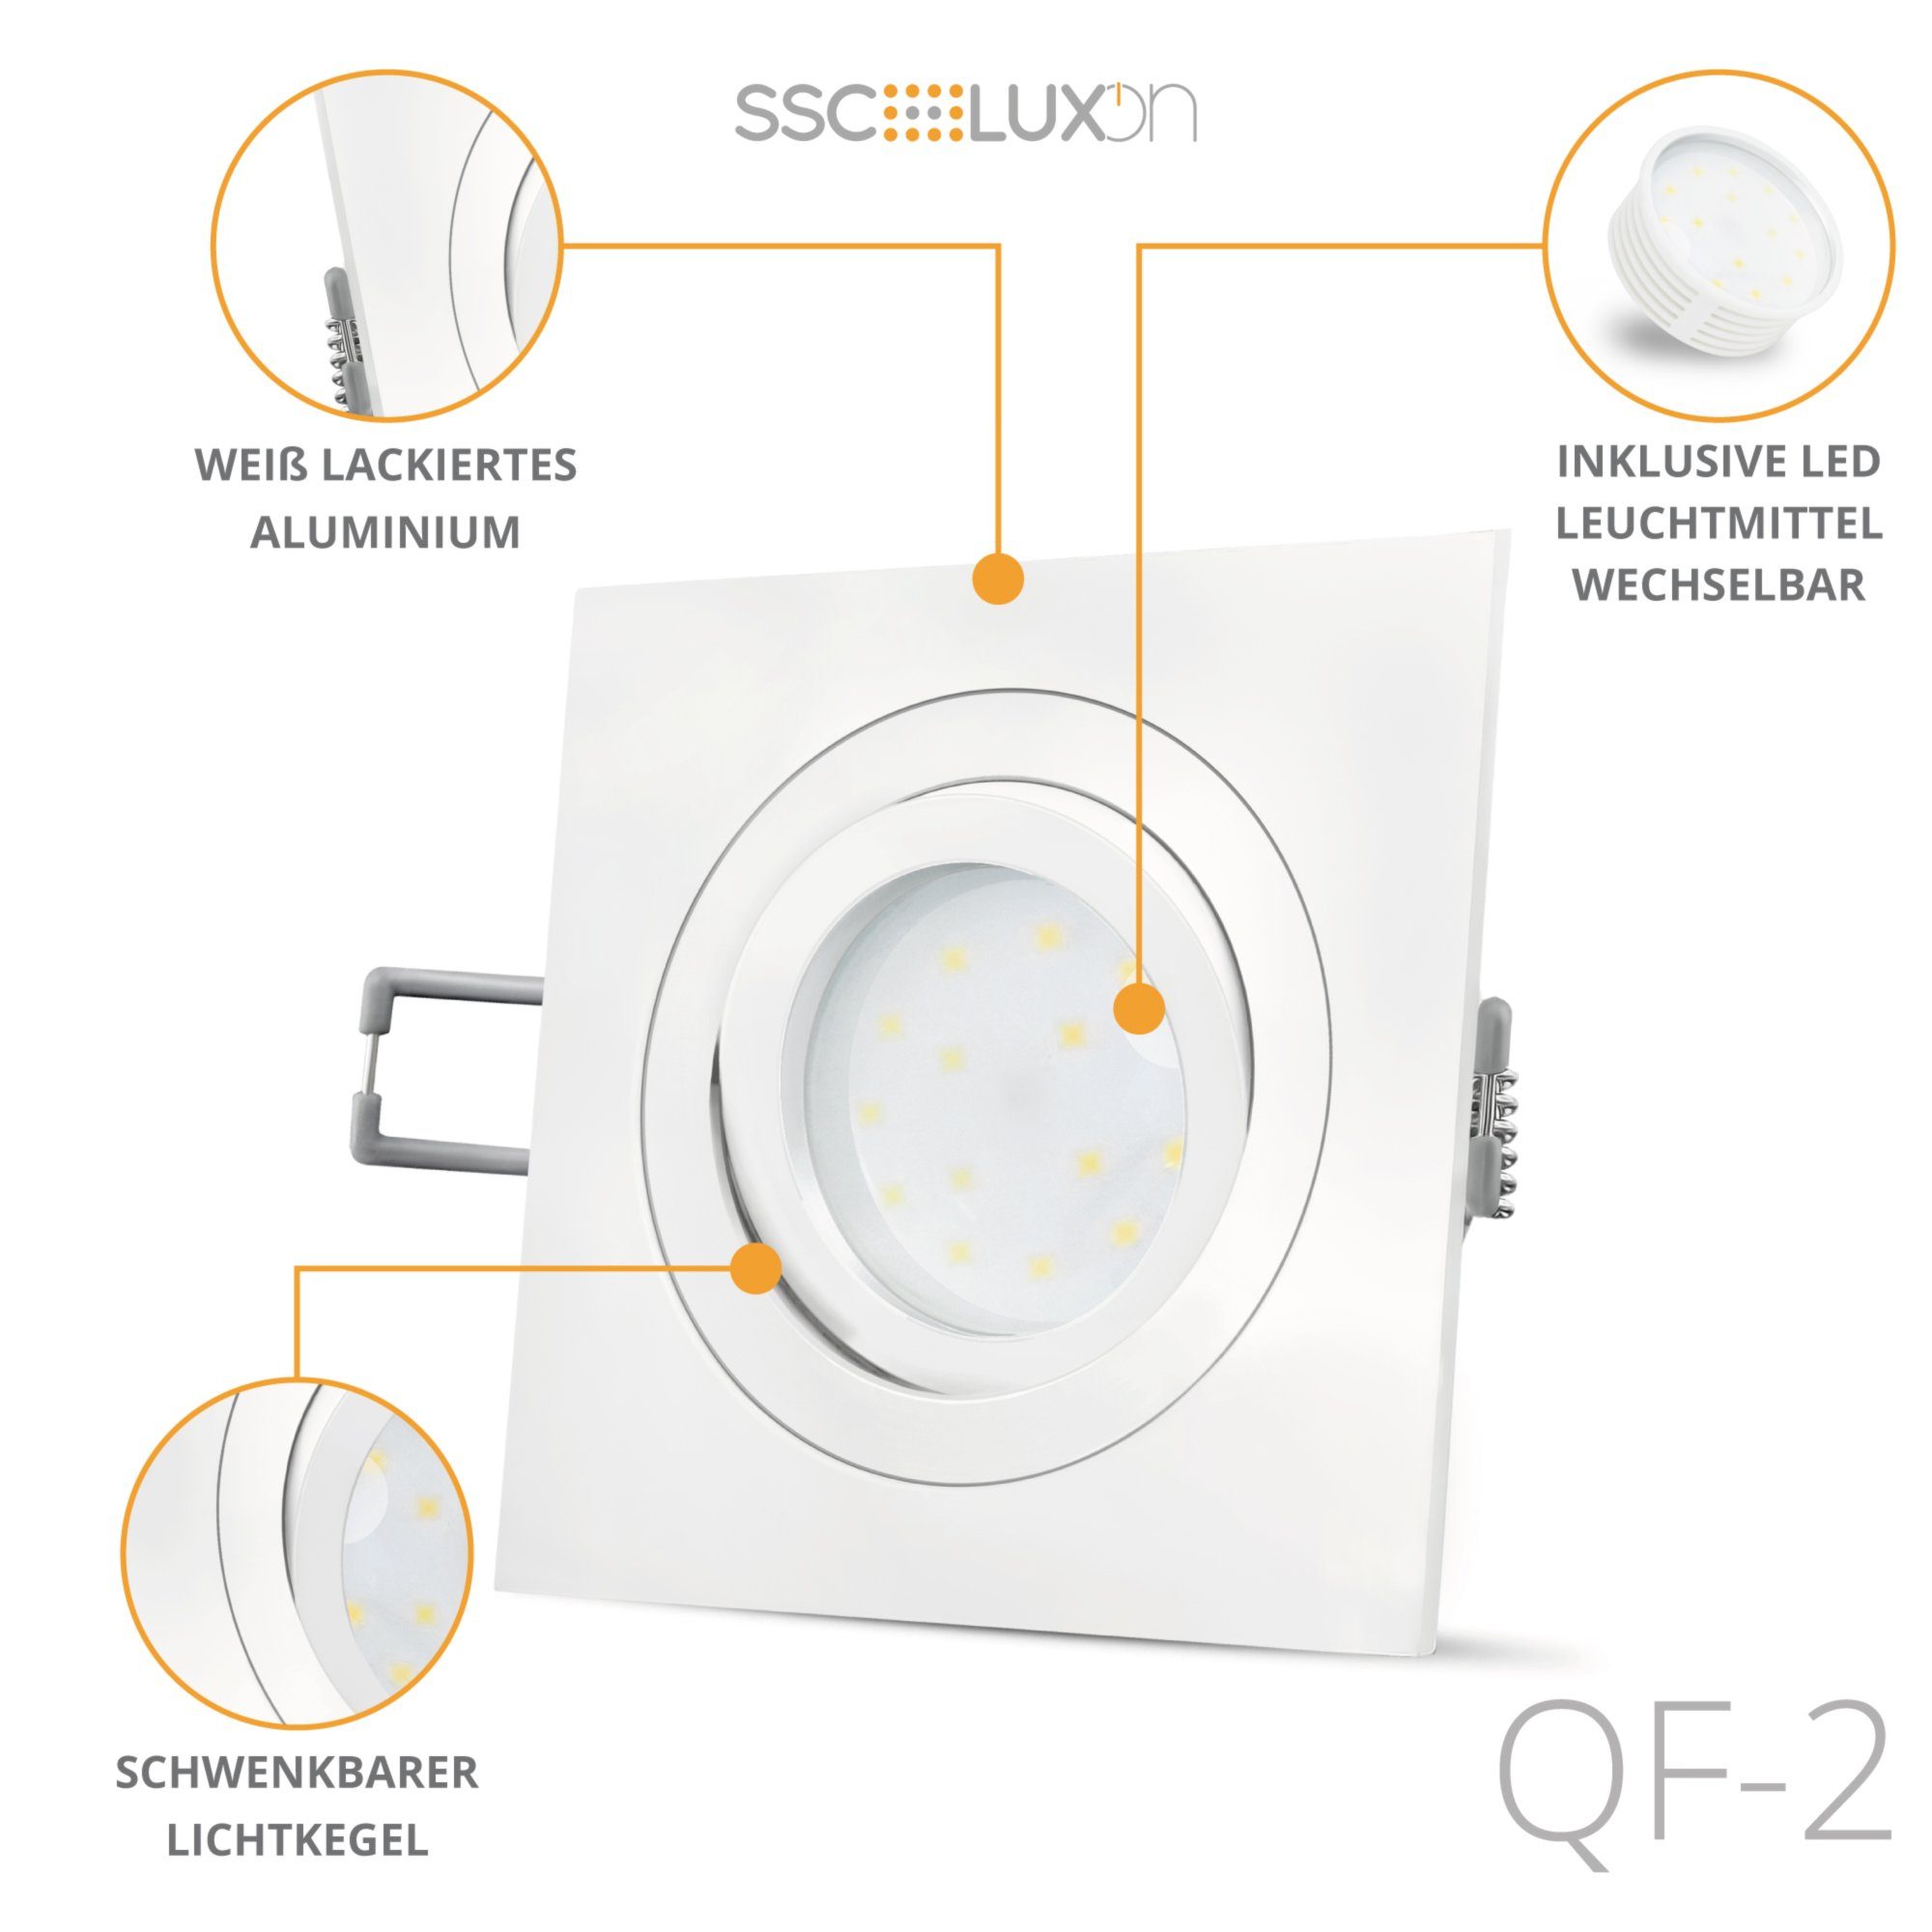 SSC-LUXon Modul LED mit 5W, LED Einbauleuchte schwenkbar Warmweiß LED & flach Einbaustrahler QF-2 weiss,